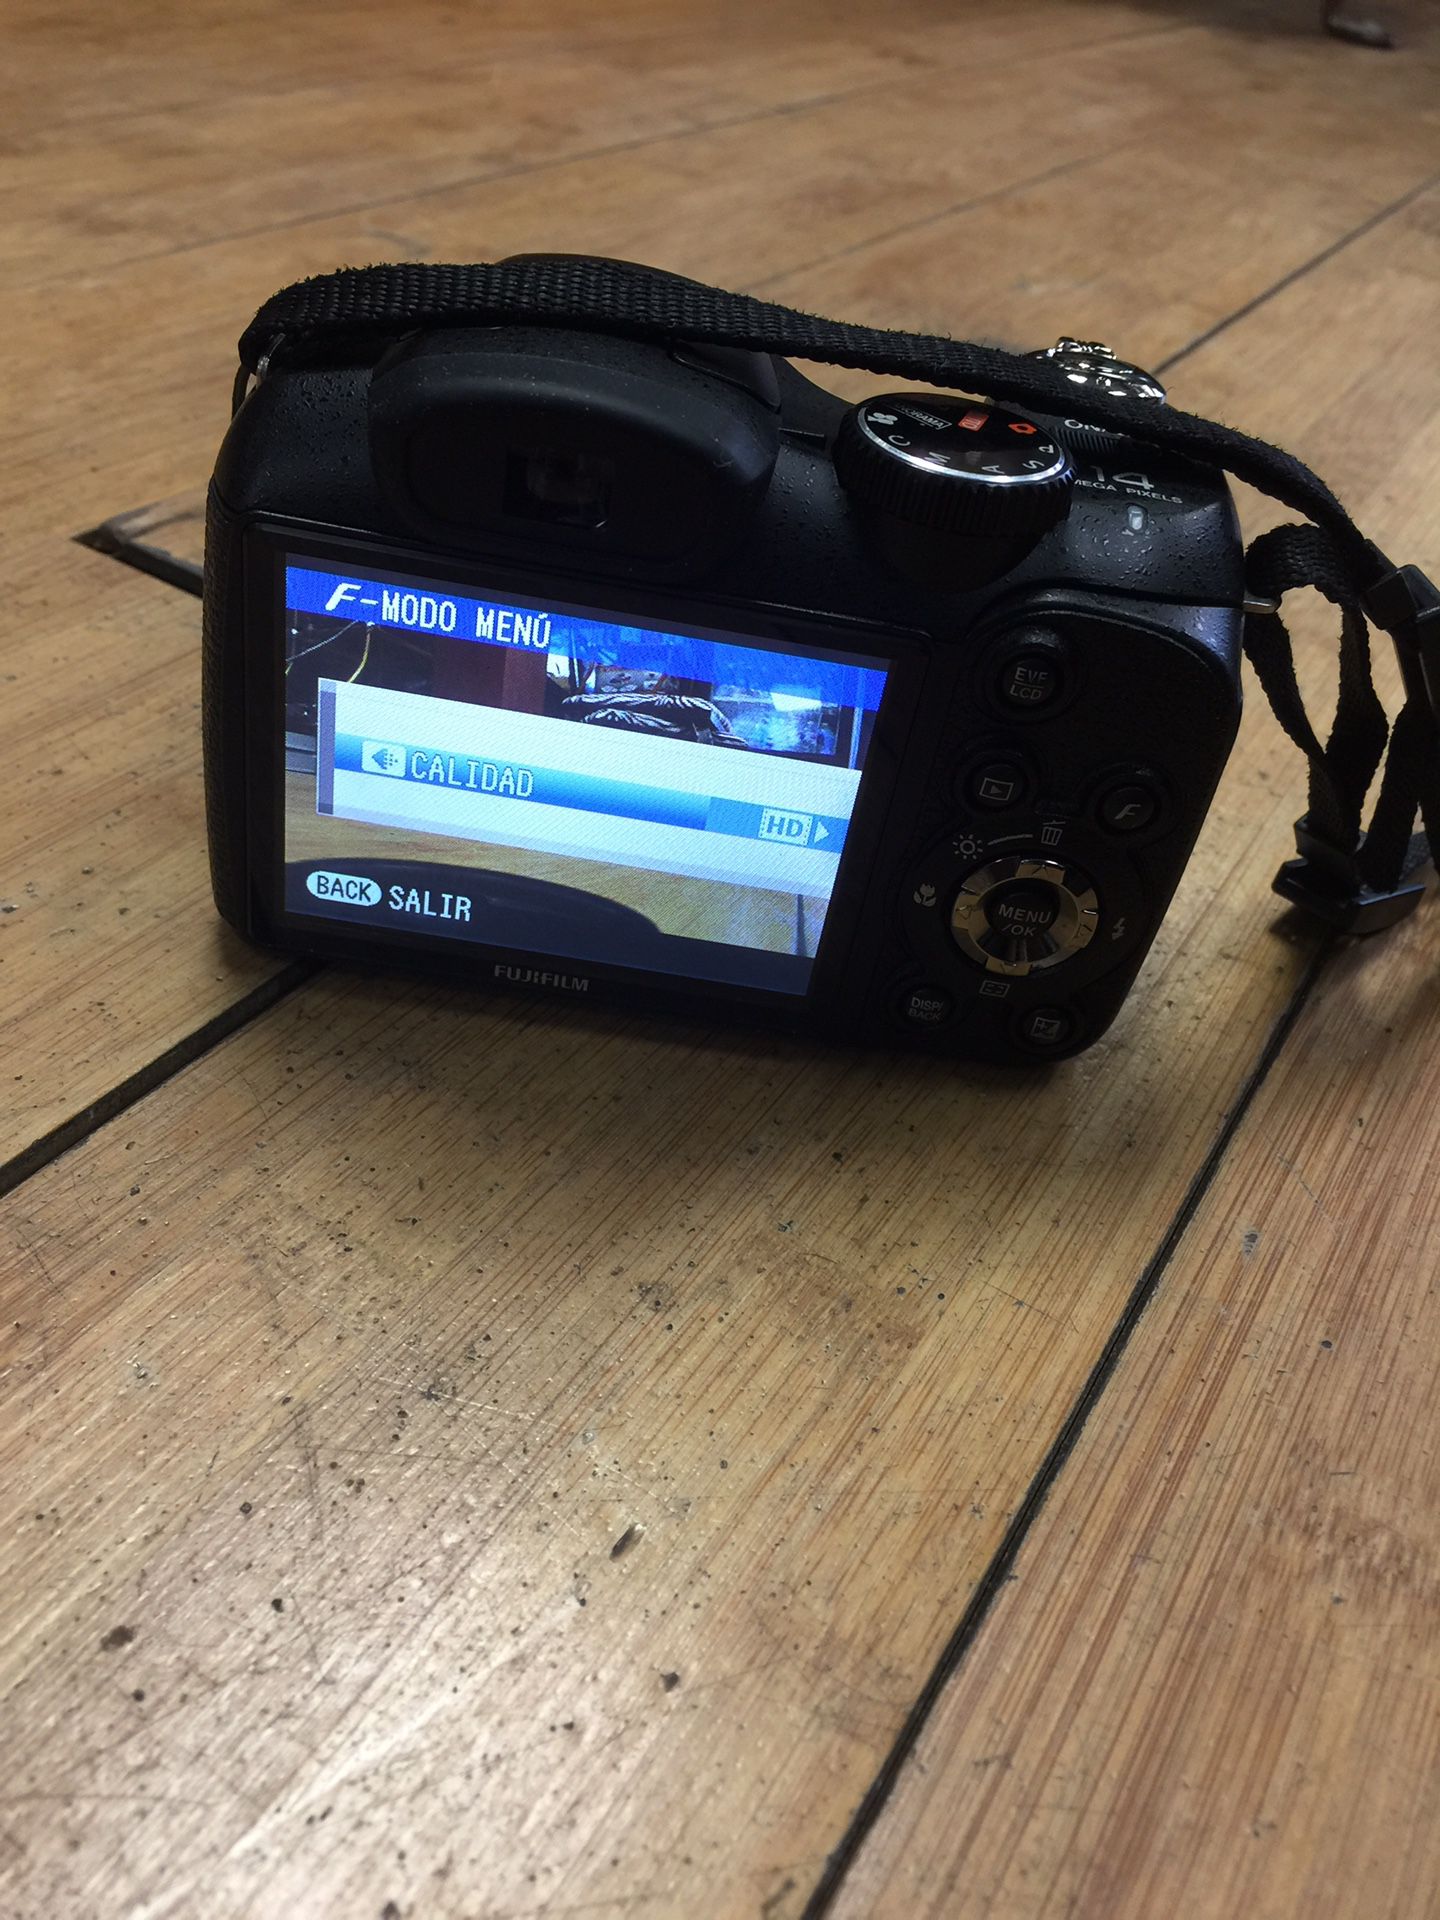 Fuji digital camera FinePix